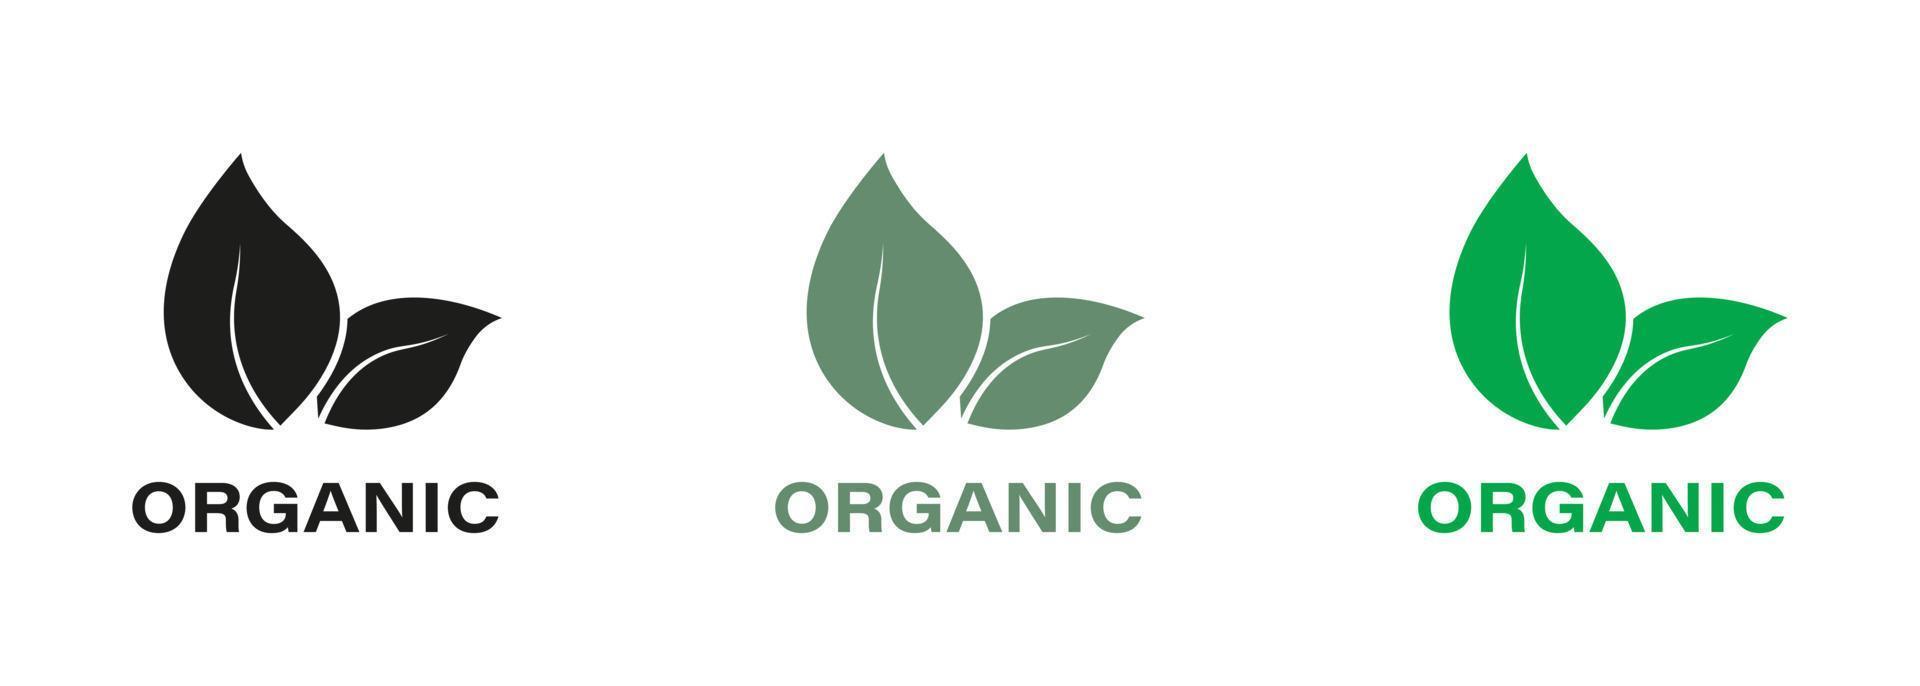 orgánico producto verde y negro icono colocar. natural bio sano eco comida silueta logo. bio orgánico producto sólido señales. vegano eco comida etiqueta. naturaleza orgánico producto. aislado vector ilustración.